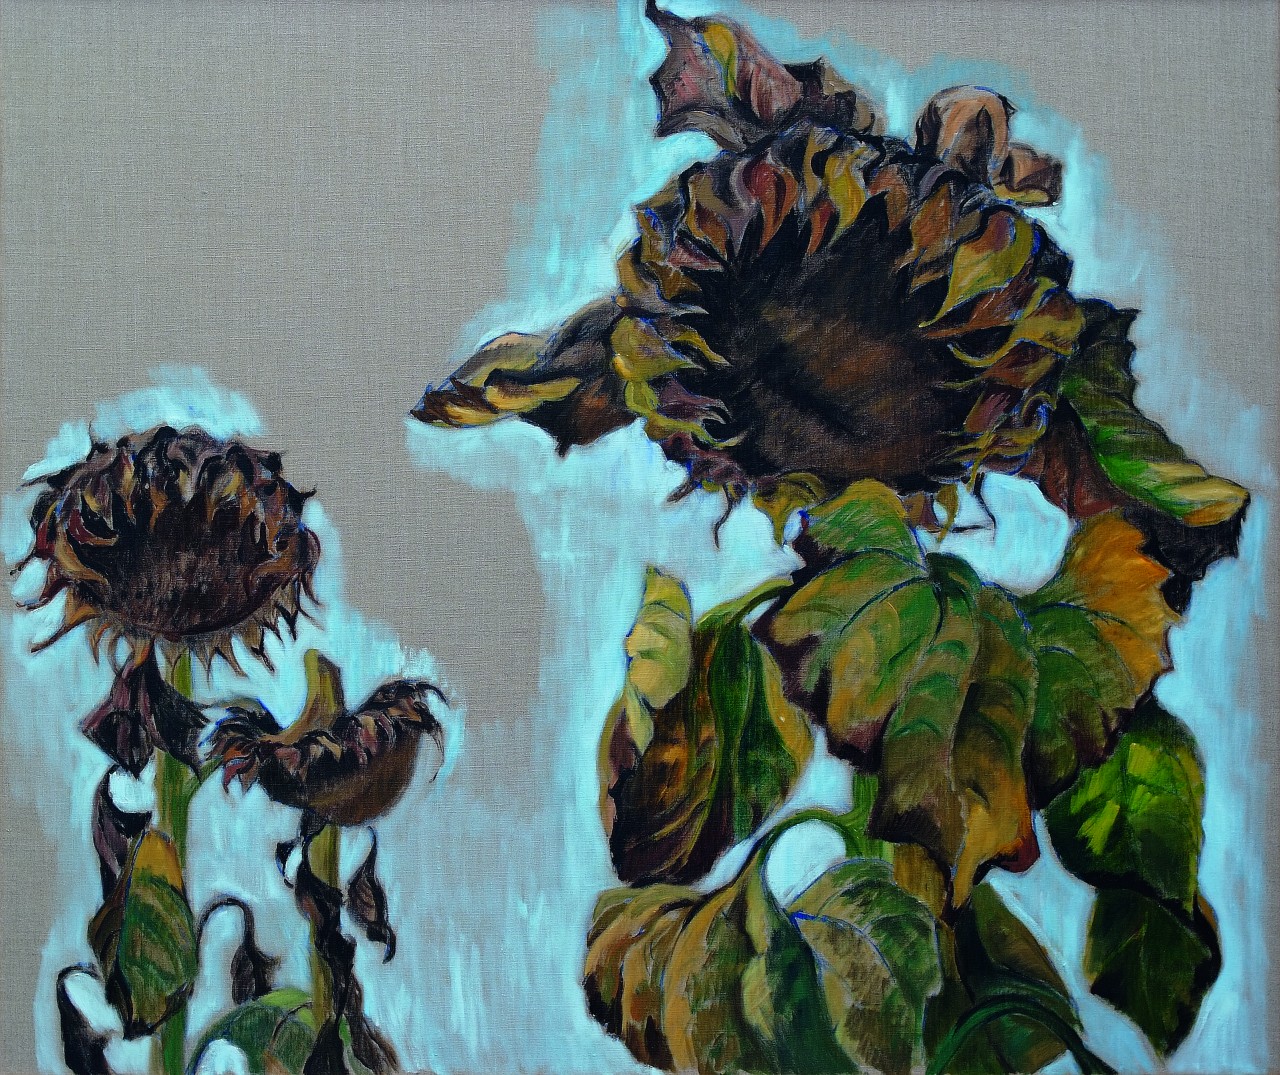 Harald Scheicher, Sunflowers, 2002